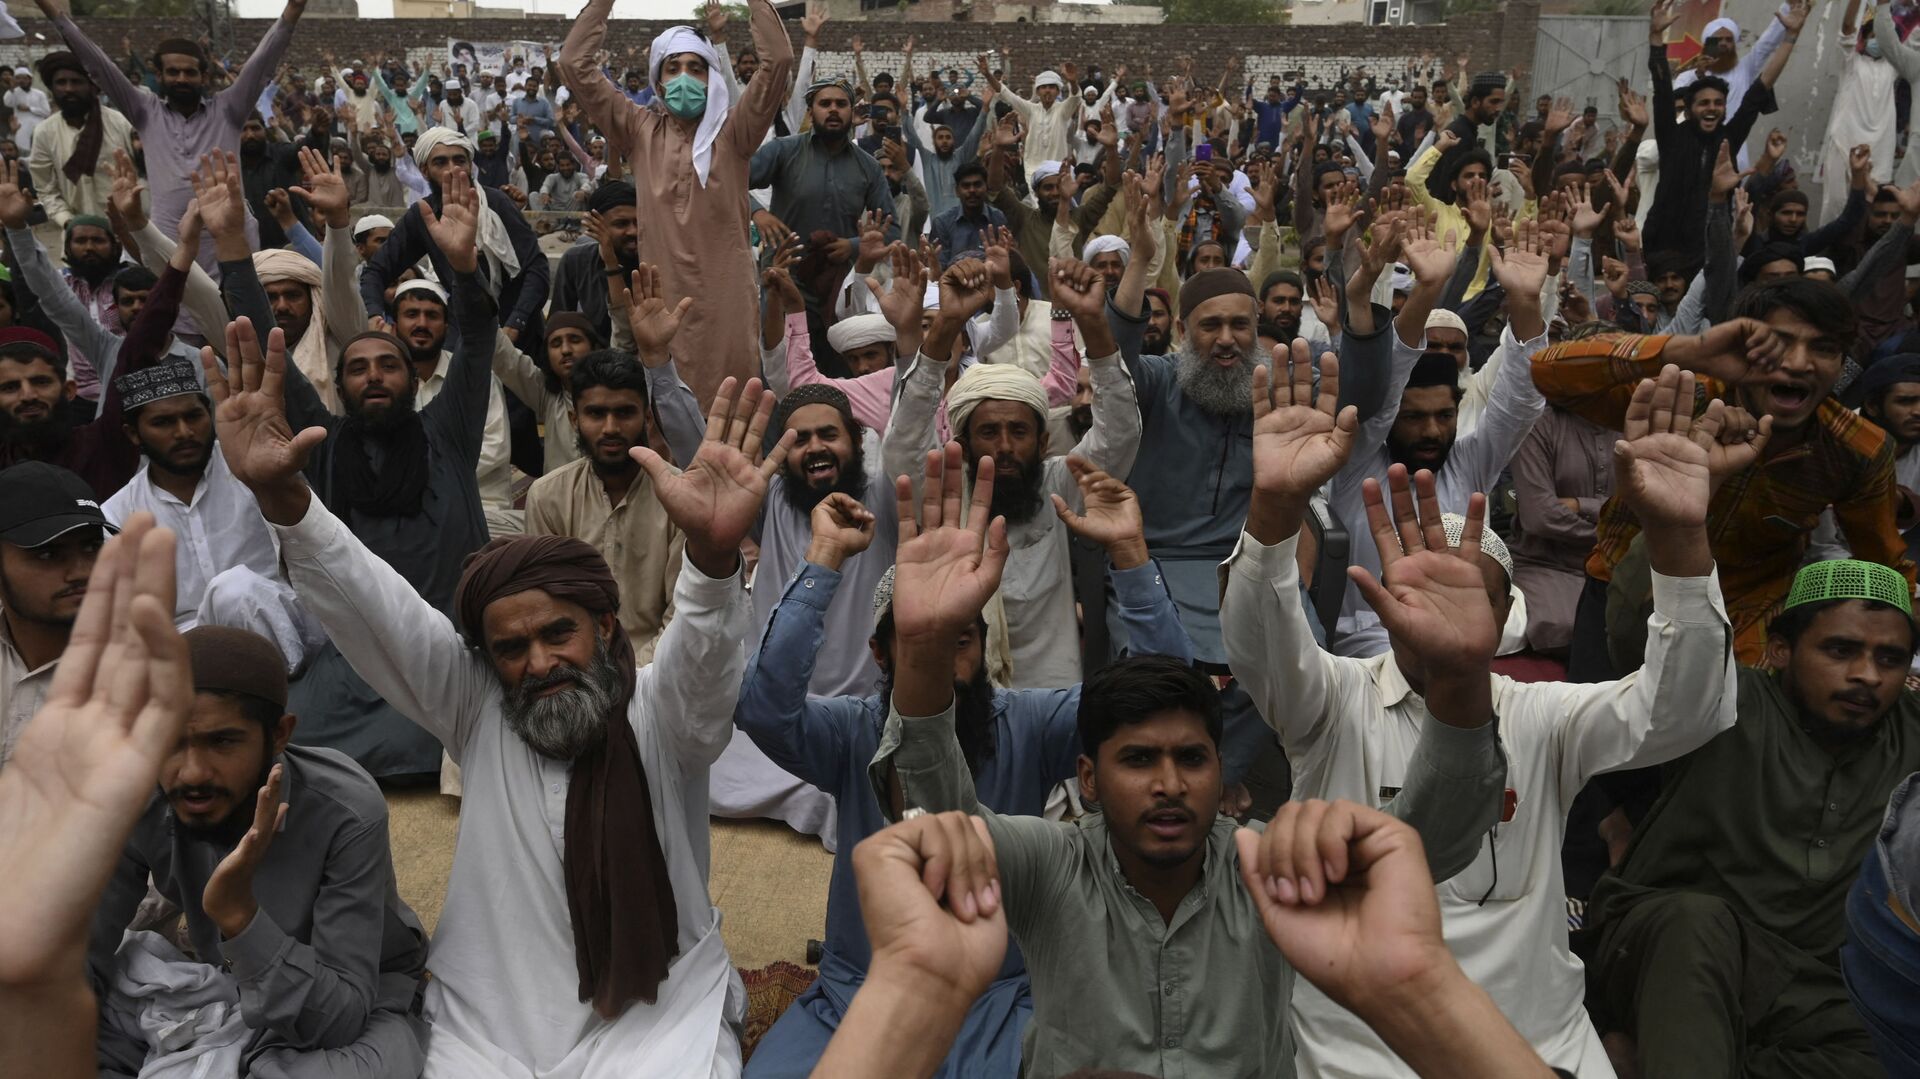 Des partisans du parti politique extrémiste Tehreek-e-Labbaik Pakistan (TLP) scandent des slogans en bloquant une rue lors d'une manifestation après l'arrestation de leur leader suite à ses appels à l'expulsion de l'ambassadeur de France, à Lahore le 16 avril 2021. (Photo par Arif ALI / AFP) - Sputnik Afrique, 1920, 16.04.2021